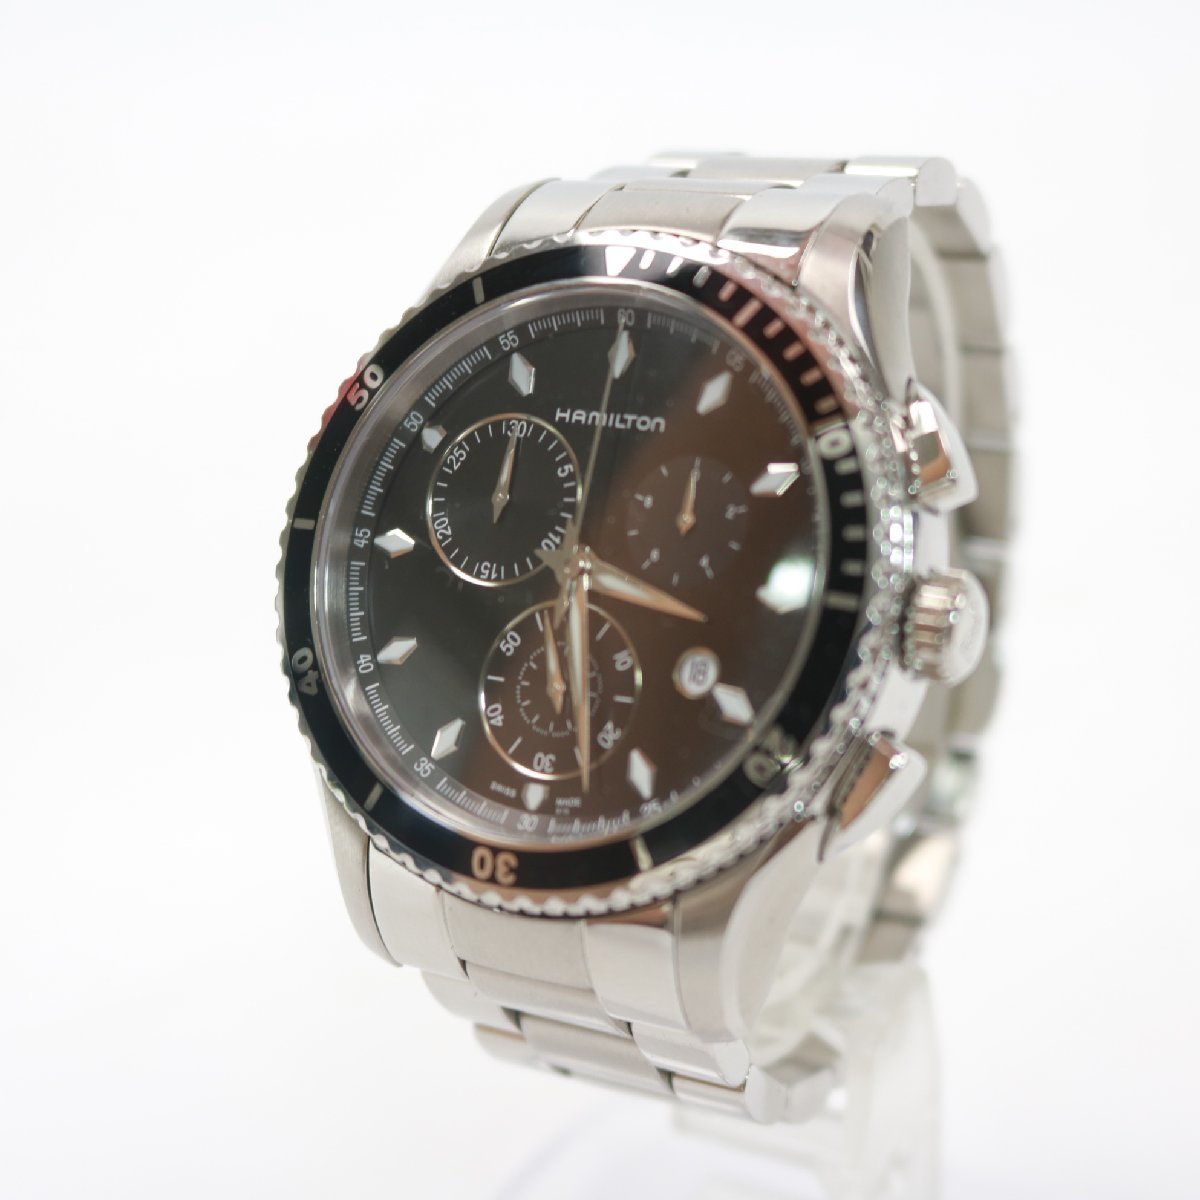 横浜市戸塚区にて ハミルトン 腕時計 ジャズマスターシービュー H375120  を出張買取させて頂きました。